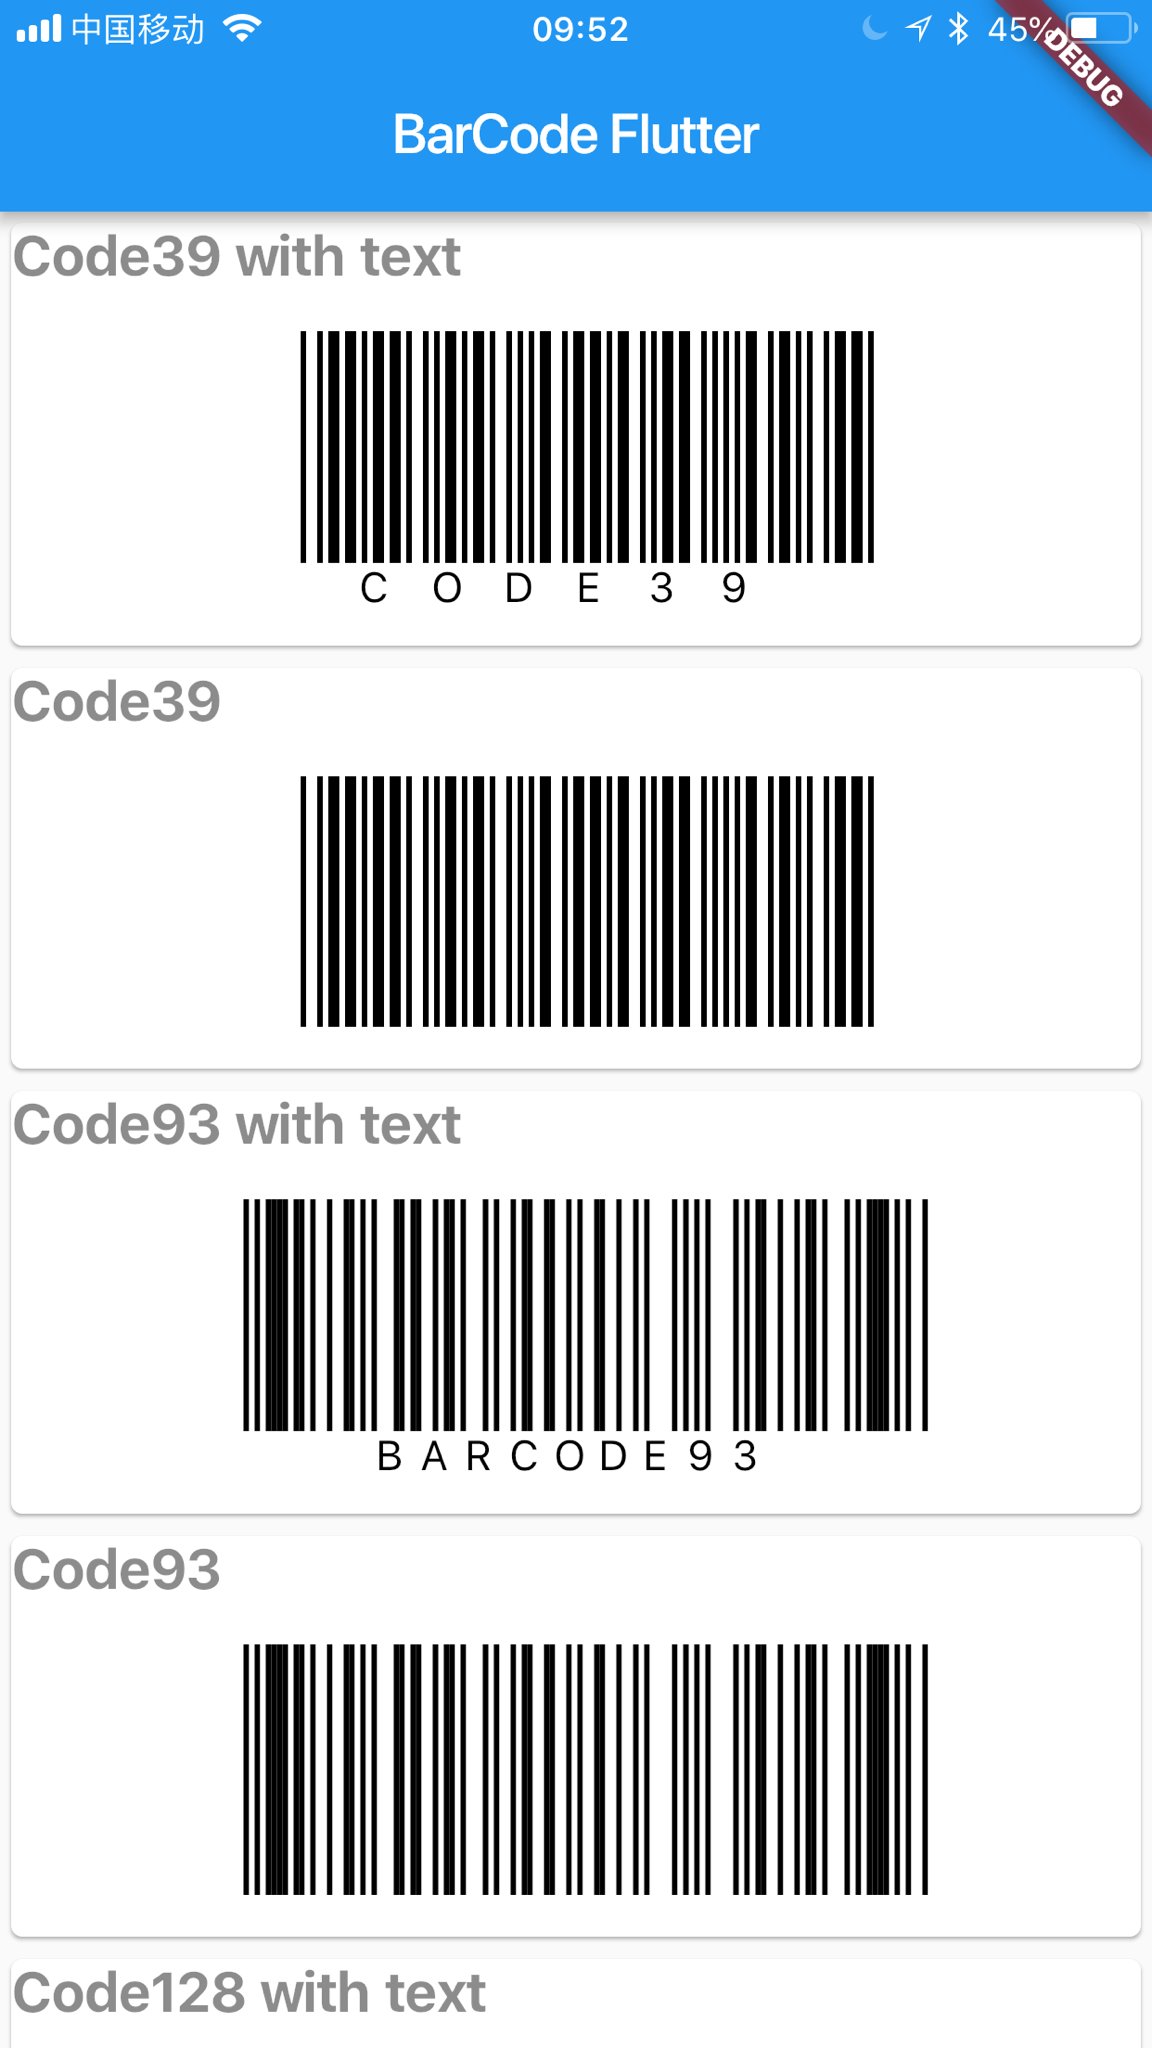 Barcode-Flutter